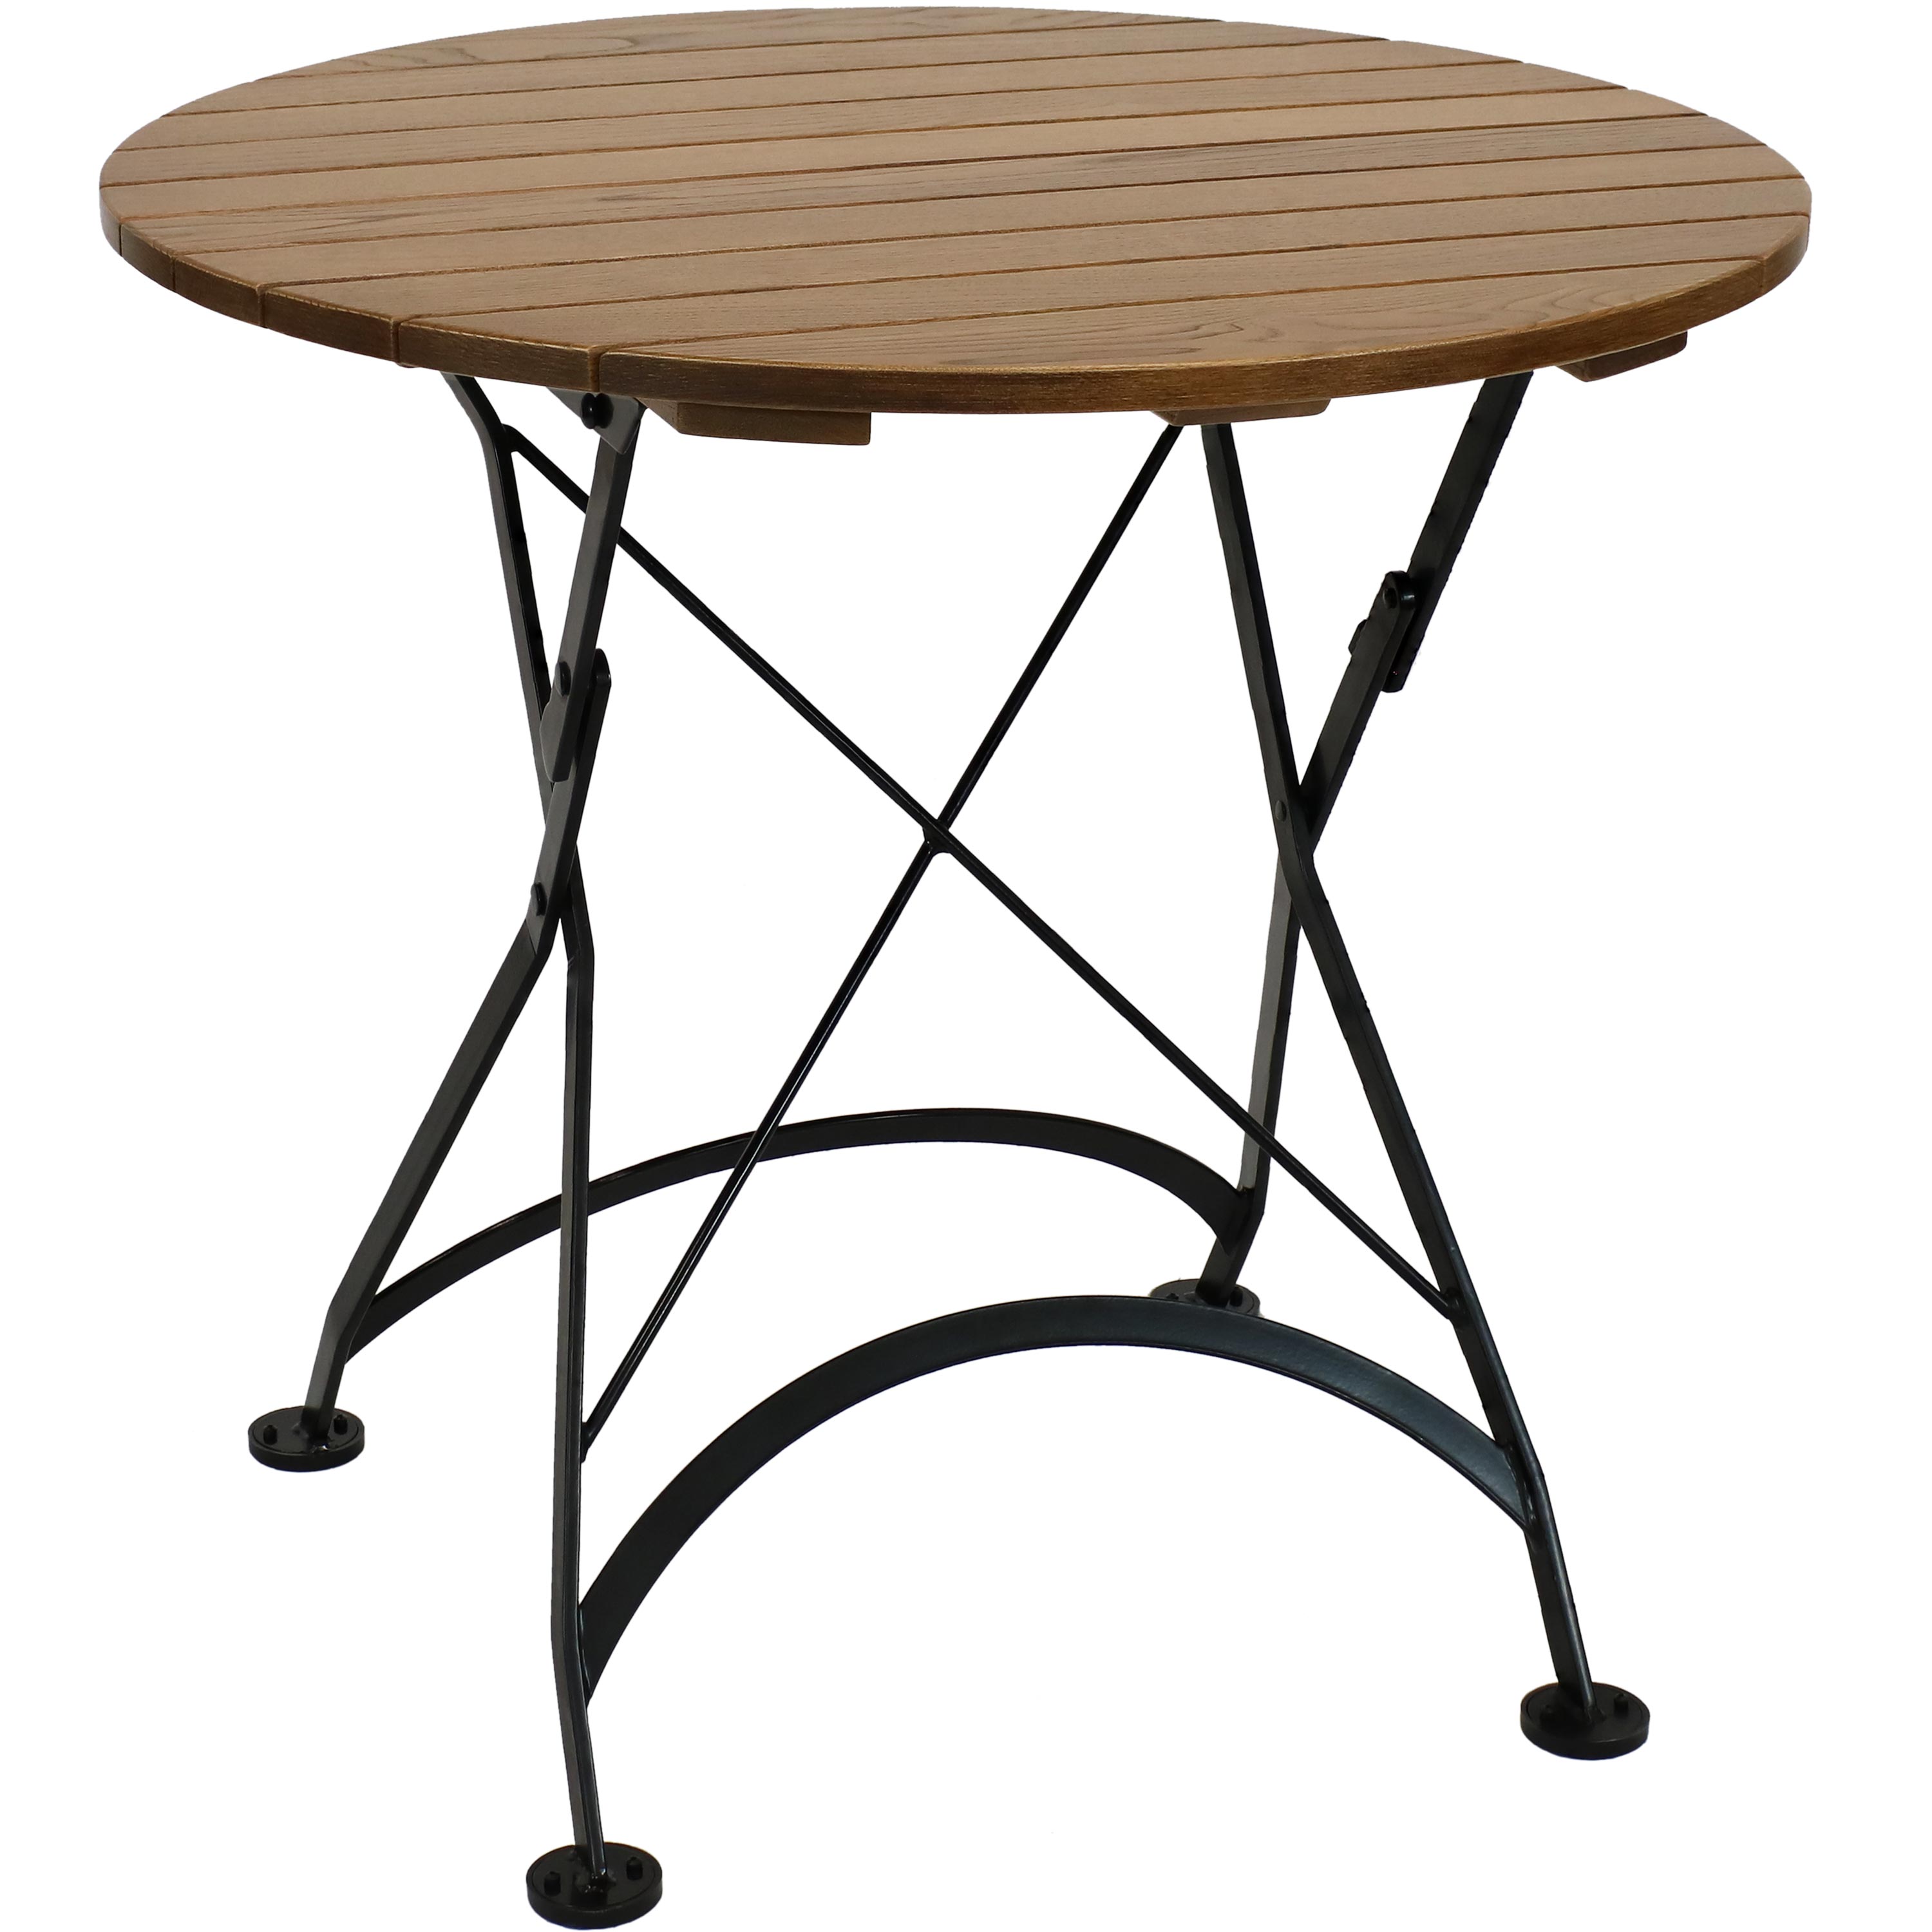 Sunnydaze European Chestnut Wood Folding Round Bistro Table